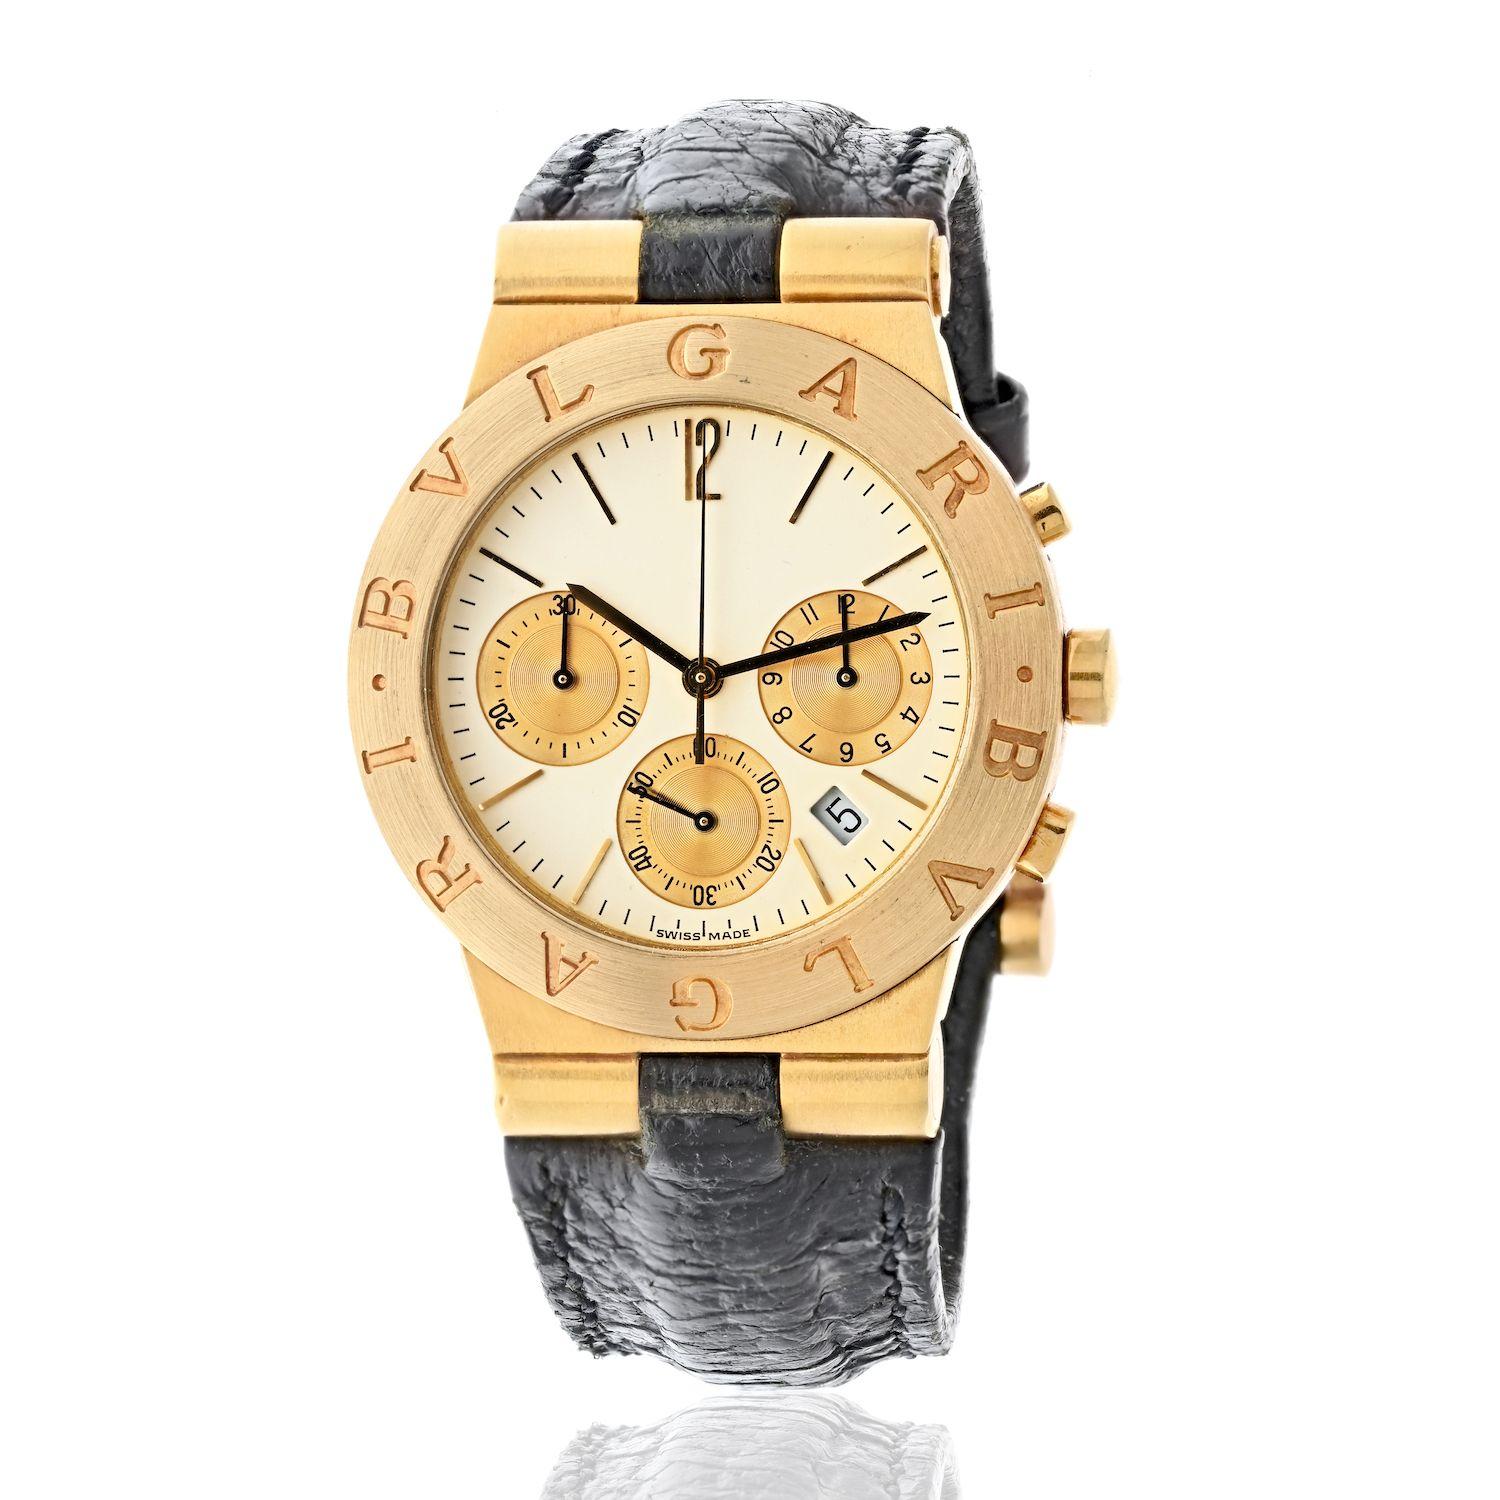 Bulgari Diagono Chronograph 35mm 18k Gelbgold Unisex Uhr. 
Ein neutrales Design mit klassischen Merkmalen macht diese Bvlgari Uhr zu einer perfekten Unisex-Uhr für das Handgelenk. Das mittelgroße 35-mm-Gesicht ist sowohl für Männer als auch für